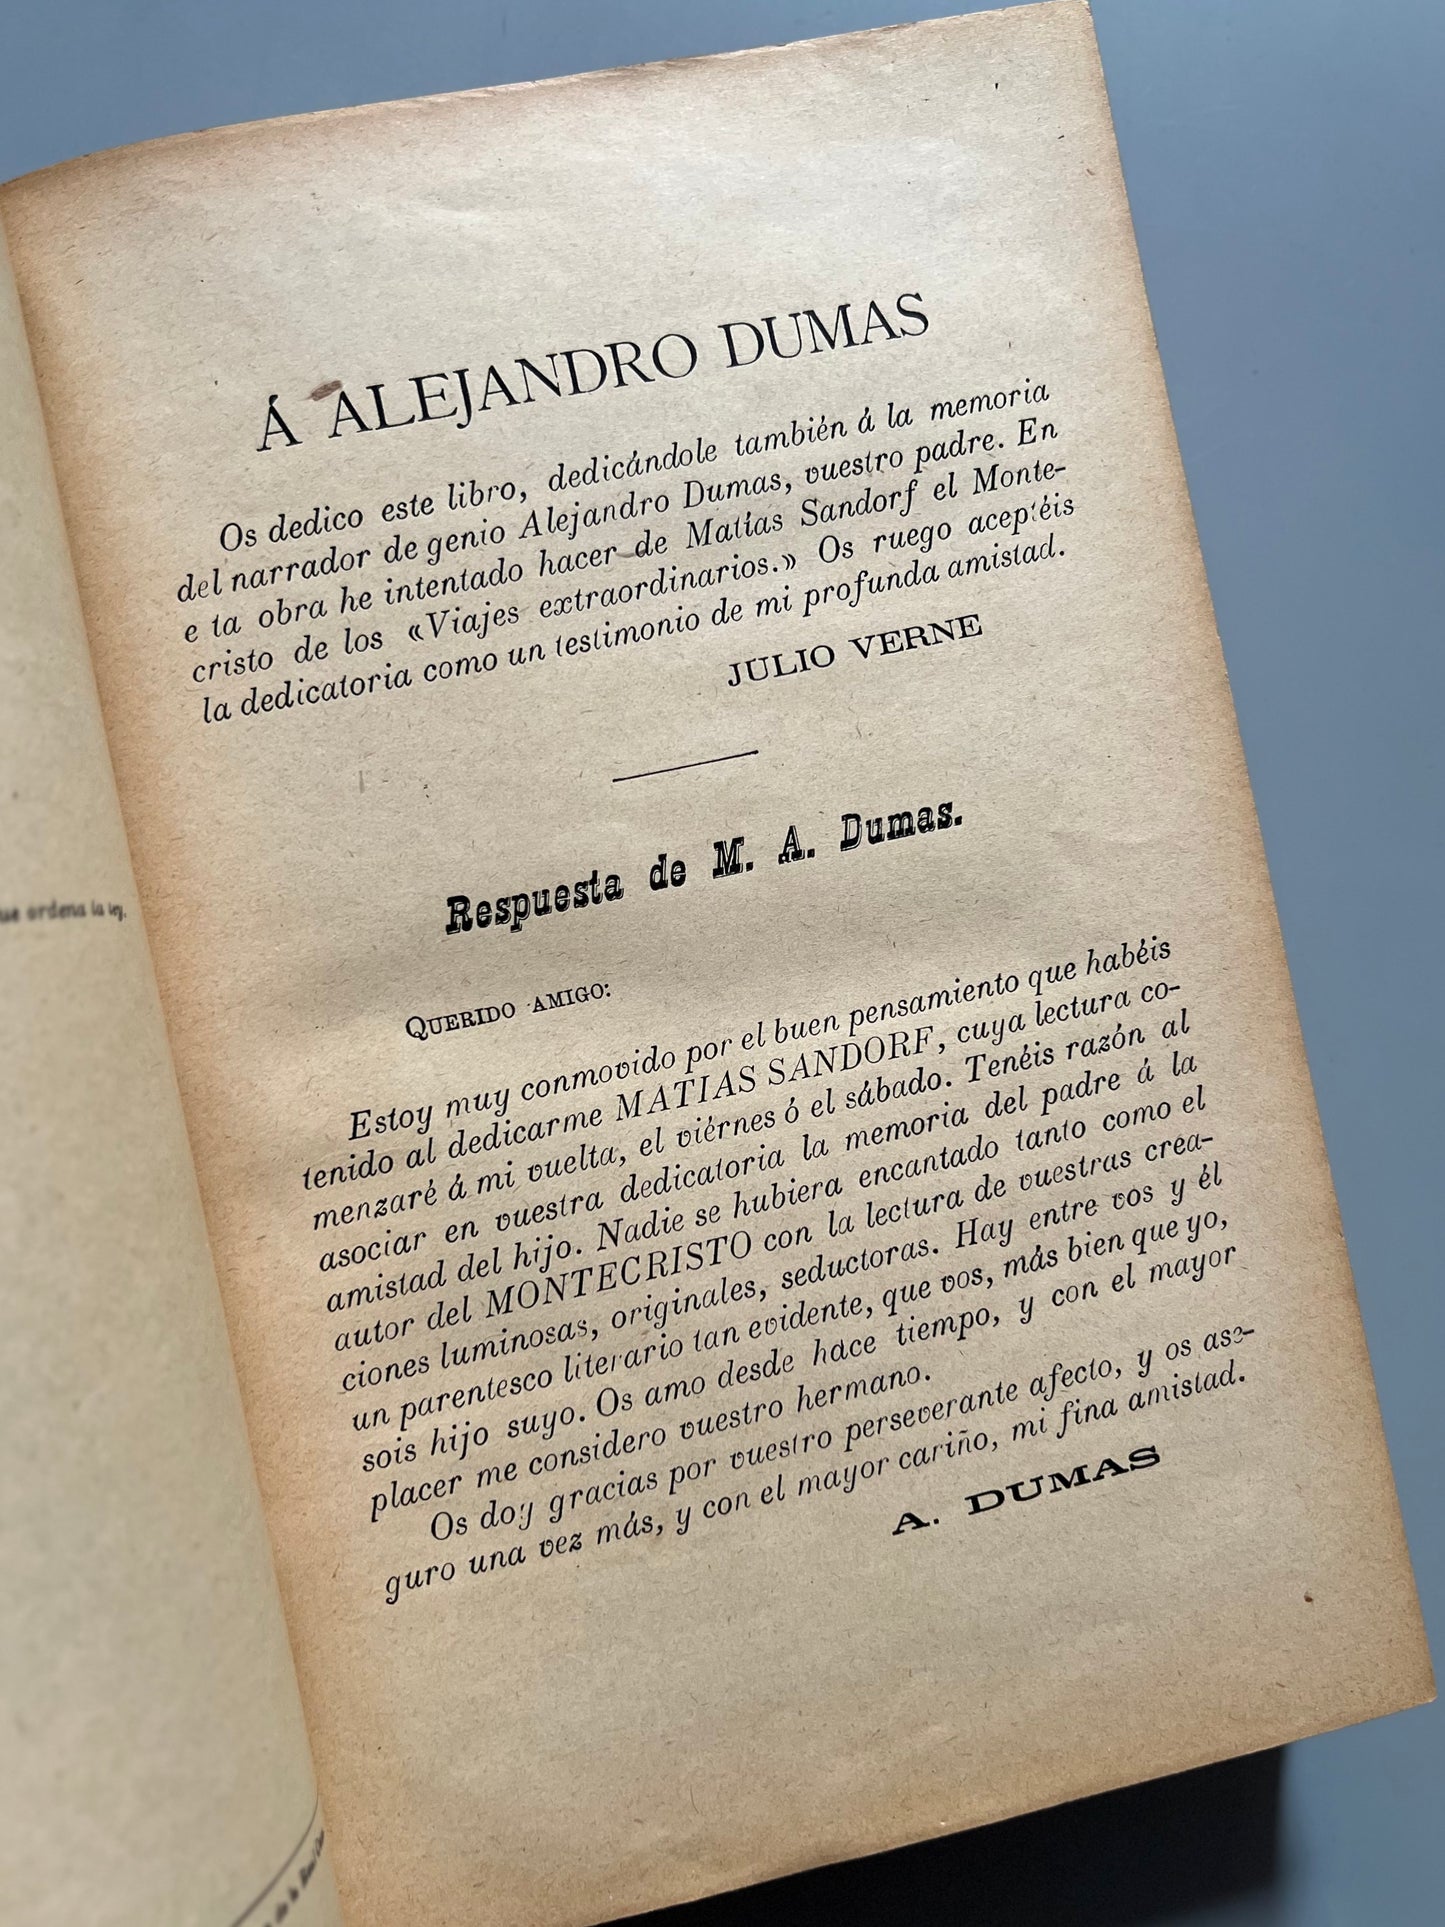 Obras completas de Julio Verne, tomo VII - Saenz de Jubera, ca. 1900